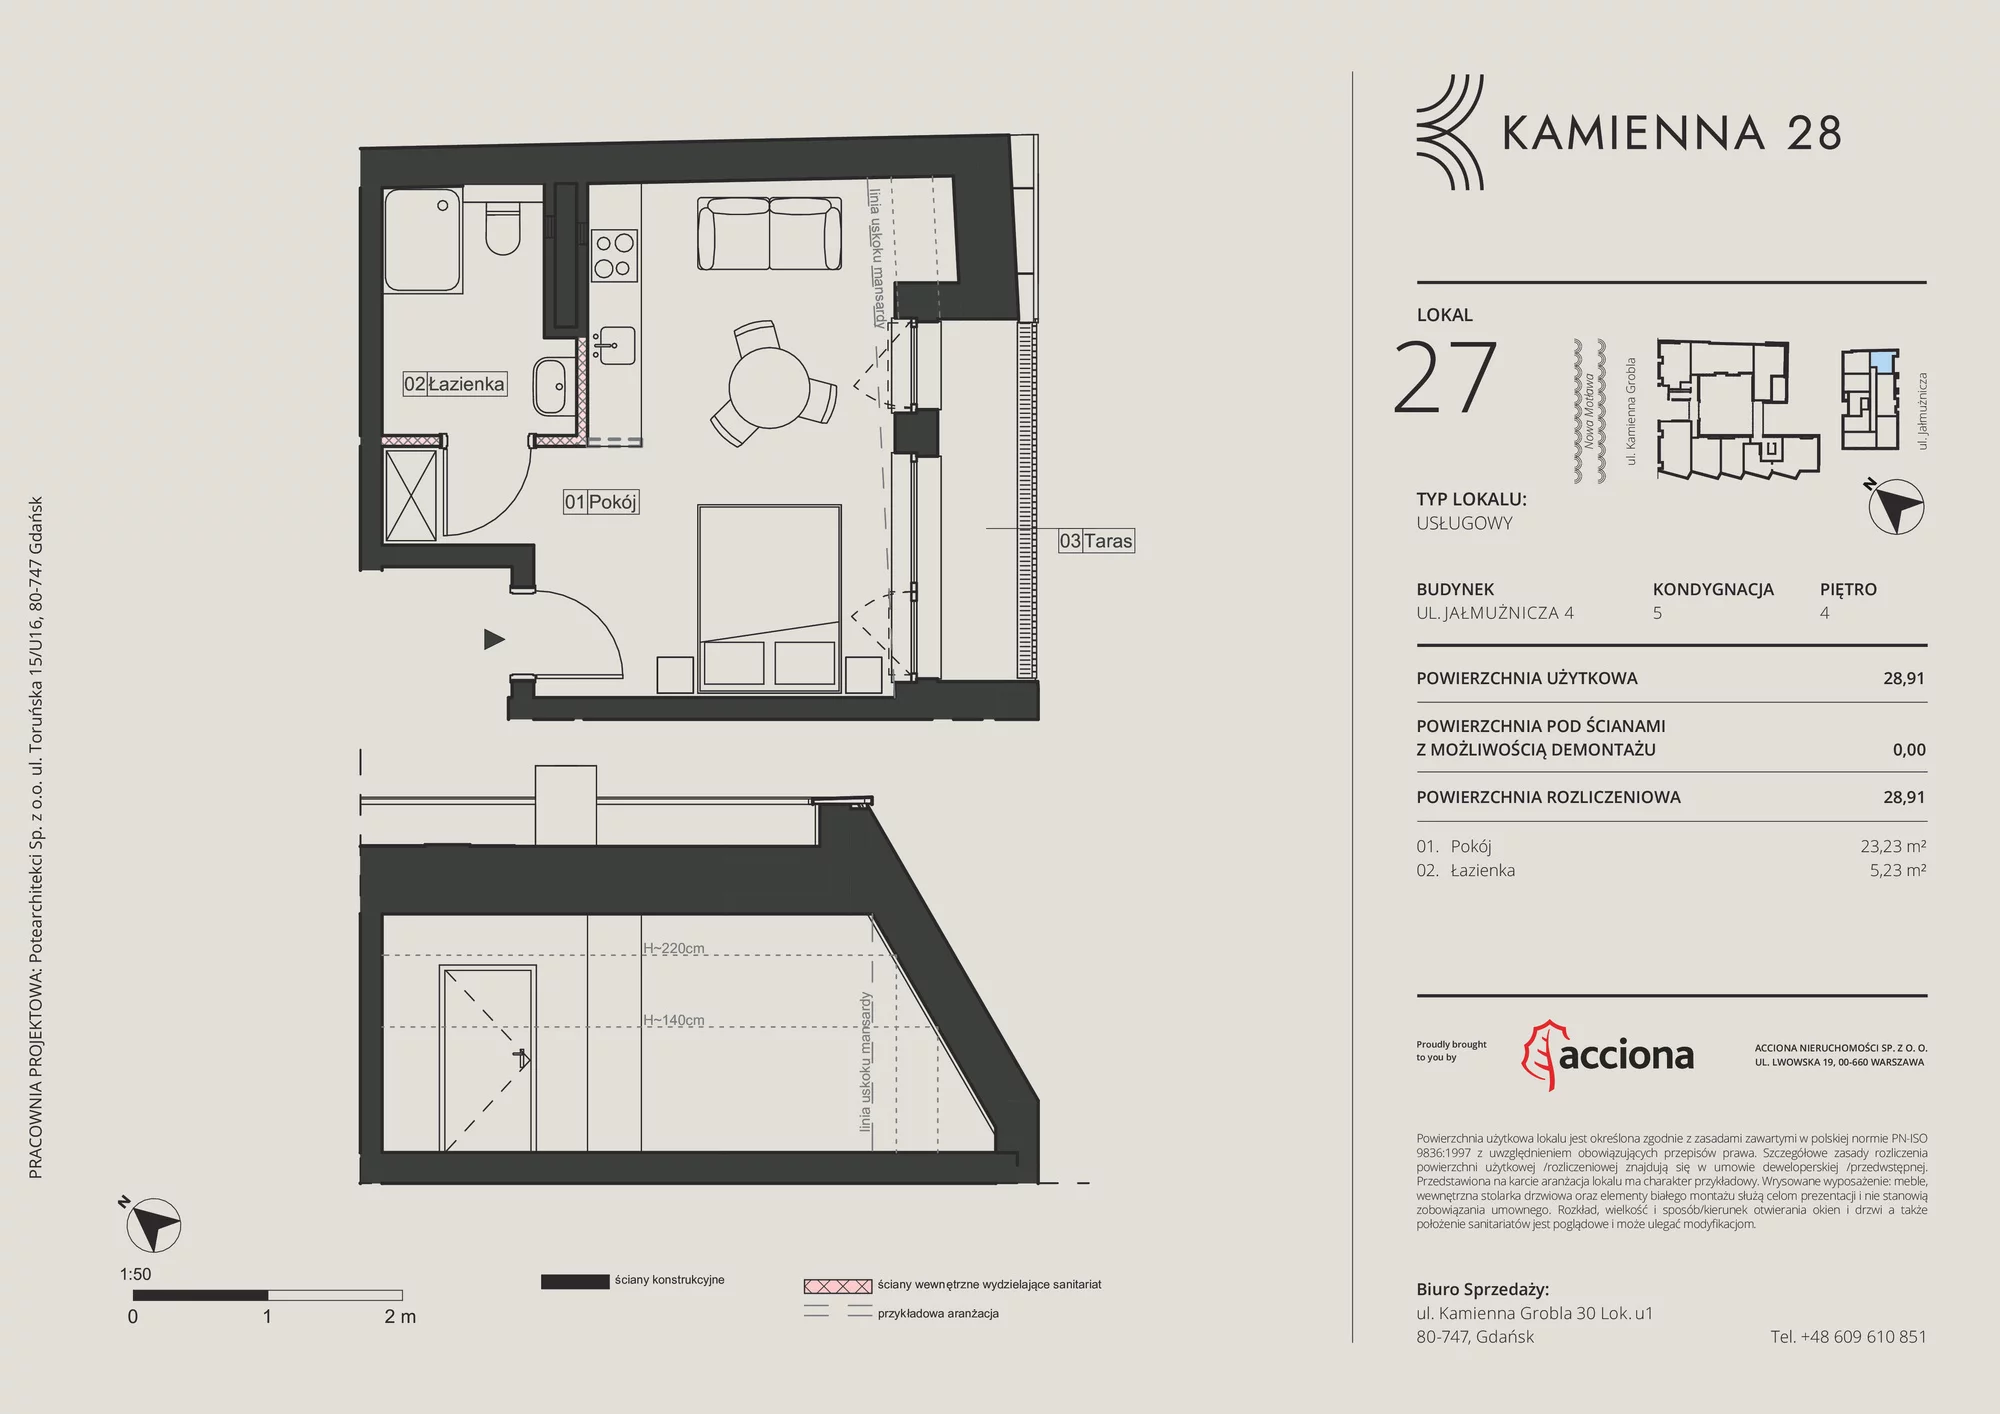 Apartament inwestycyjny 28,91 m², piętro 4, oferta nr 4.27, Kamienna 28 - apartamenty inwestycyjne, Gdańsk, Śródmieście, Dolne Miasto, ul. Jałmużnicza 4